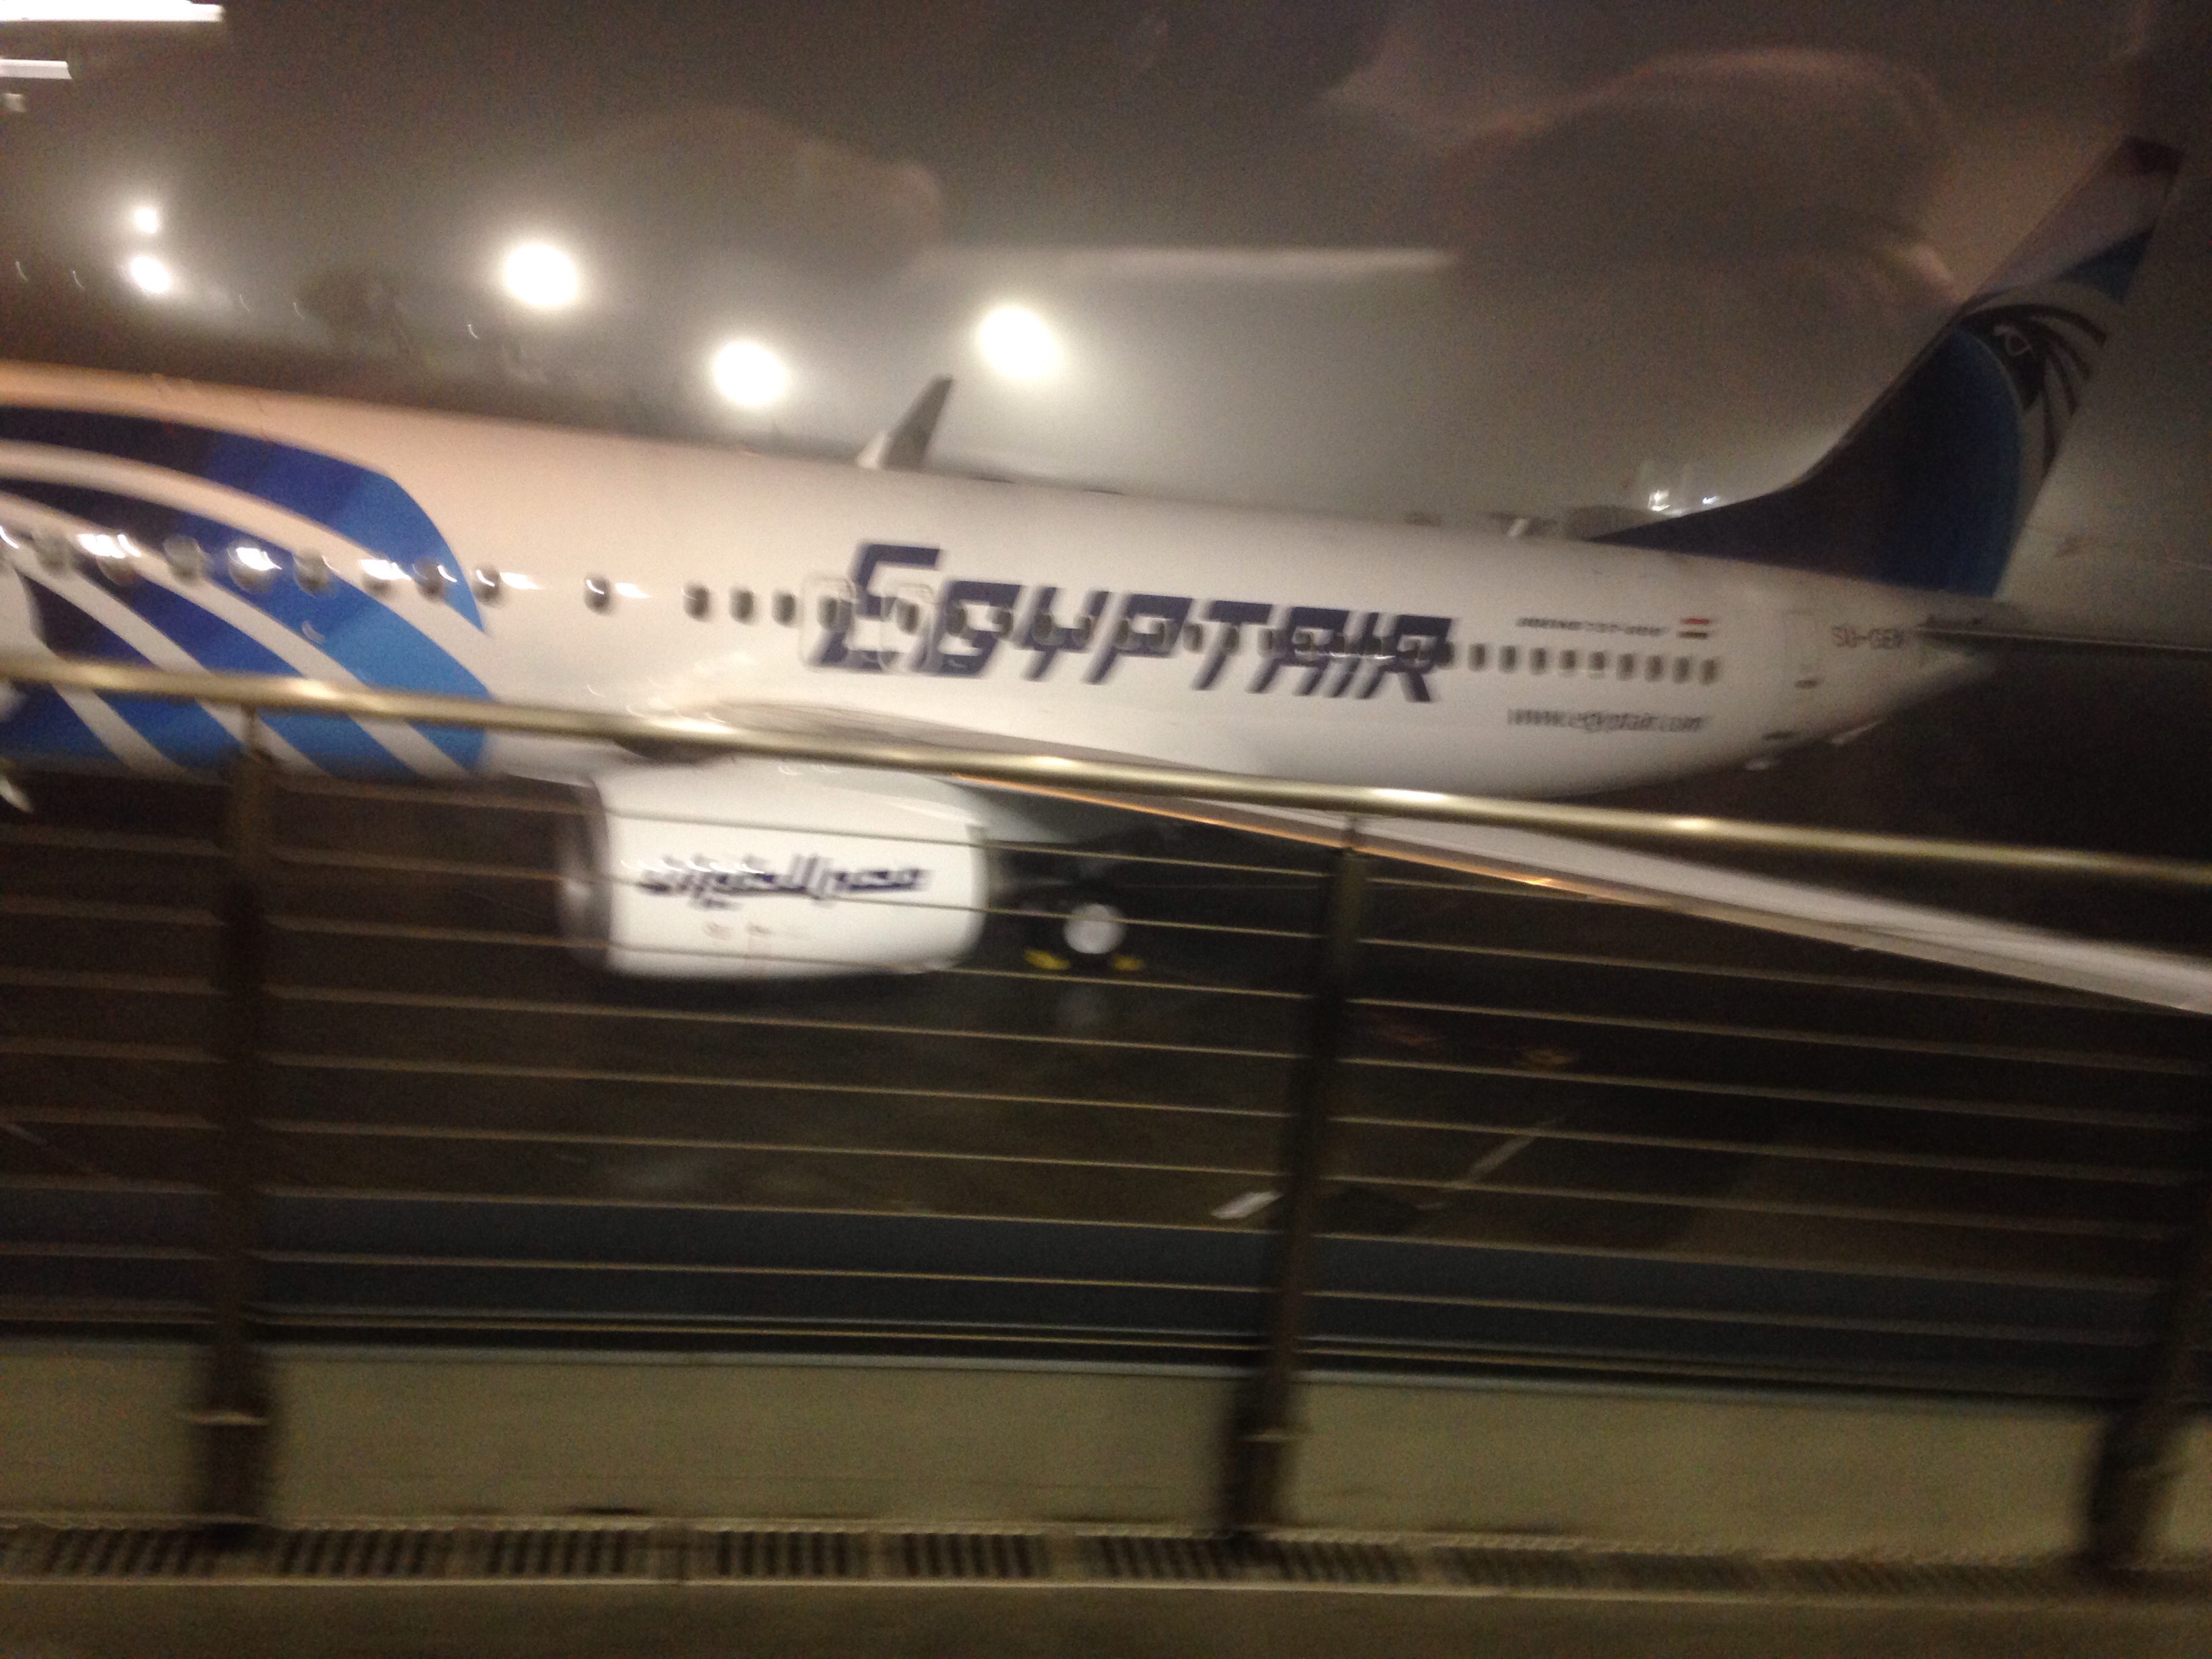 الصور الأولى للطائرة الجديدة لمصر للطيران (2)